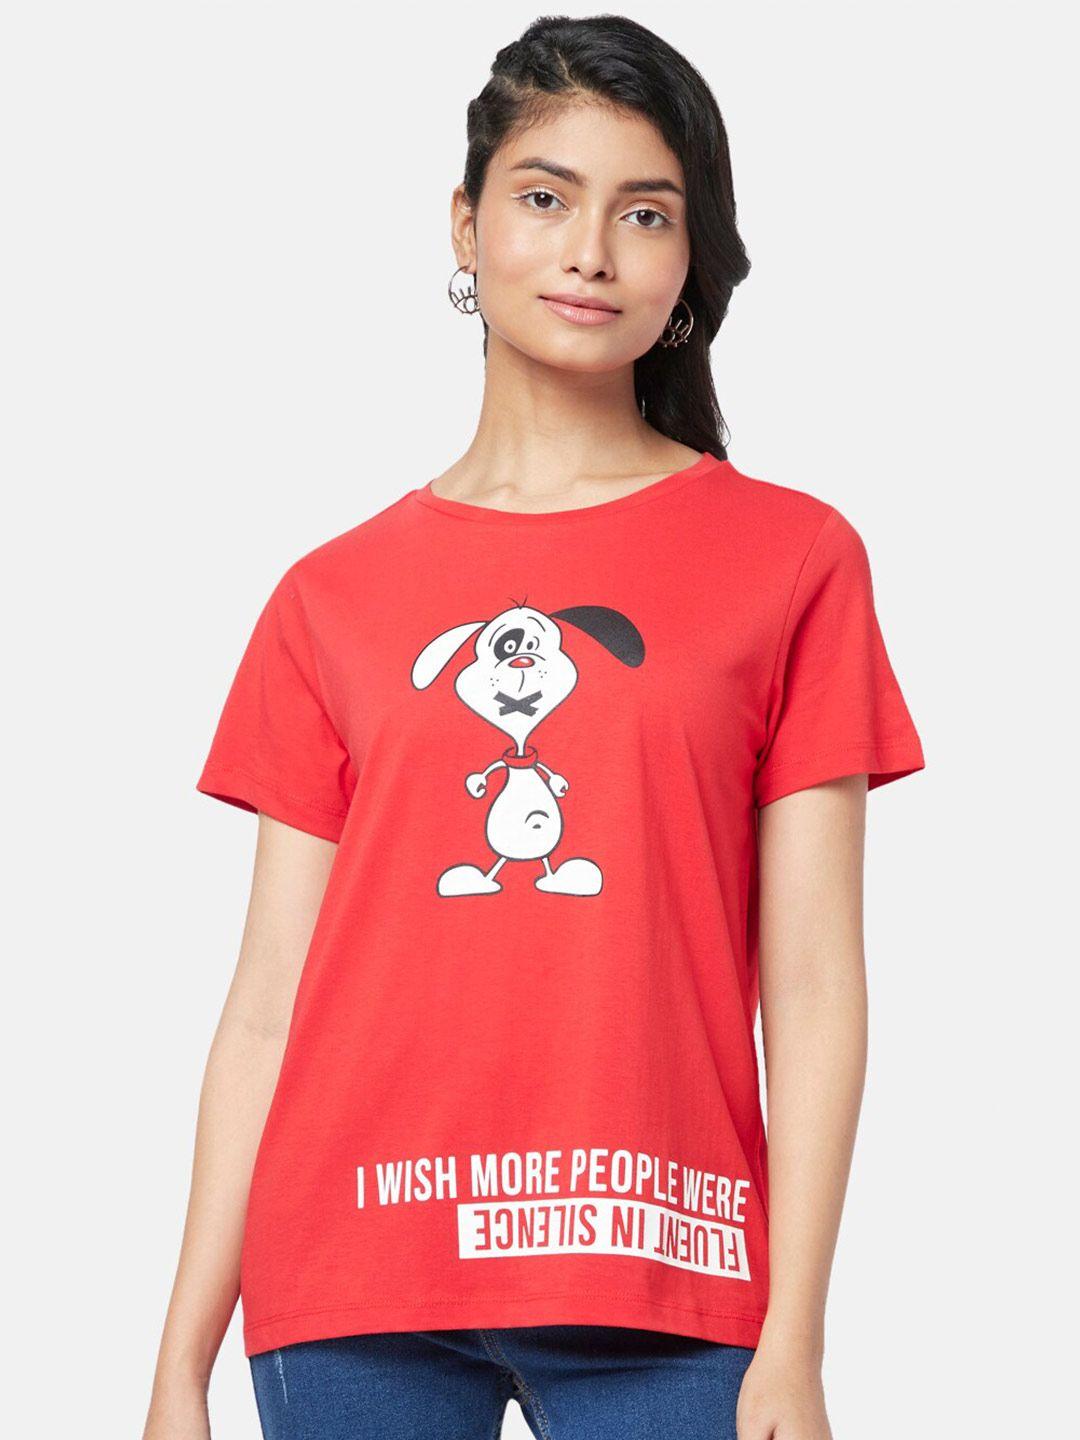 people-women-printed-t-shirt